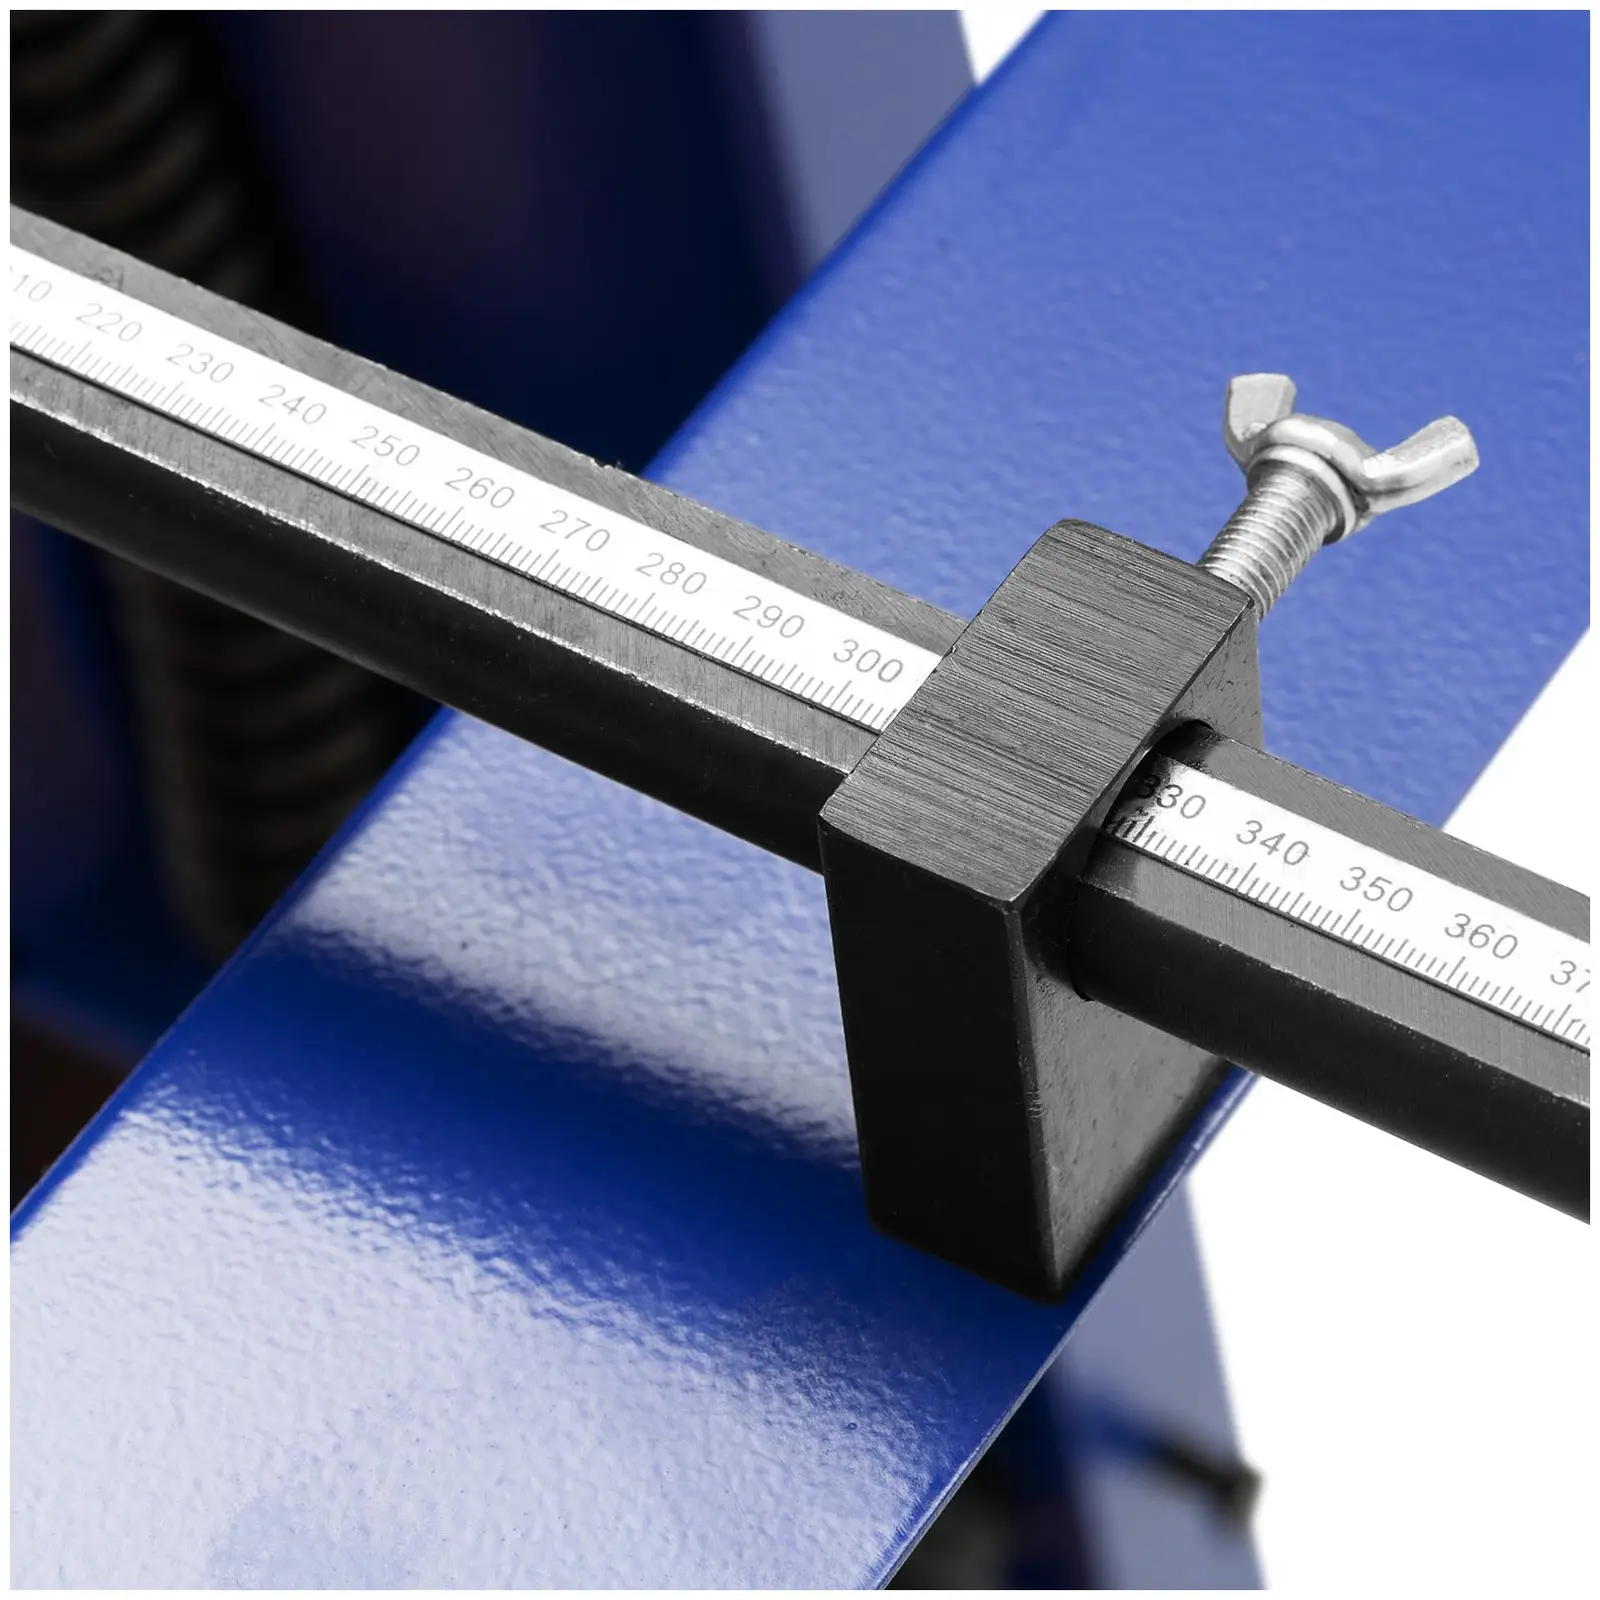 Tafelschere - mit Unterbau - Fußpedal - 1000 mm Schnittlänge - bis 1,5 mm Materialstärke - 0 - 840 mm Hinteranschlag